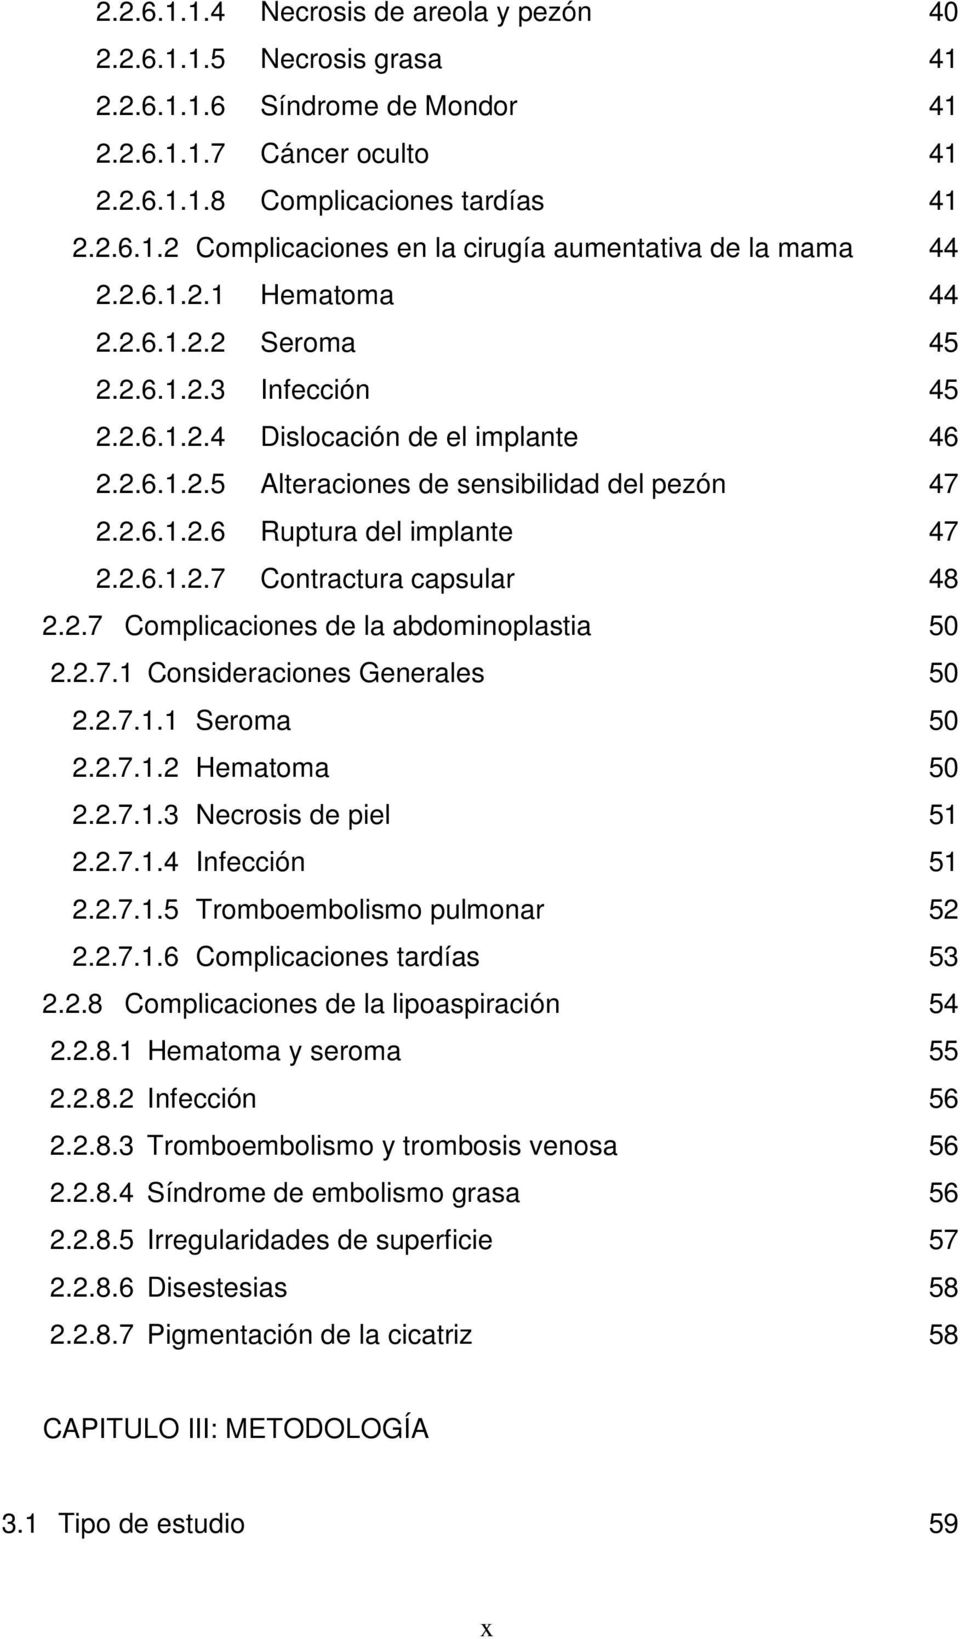 2.6.1.2.7 Contractura capsular 48 2.2.7 Complicaciones de la abdominoplastia 50 2.2.7.1 Consideraciones Generales 50 2.2.7.1.1 Seroma 50 2.2.7.1.2 Hematoma 50 2.2.7.1.3 Necrosis de piel 51 2.2.7.1.4 Infección 51 2.